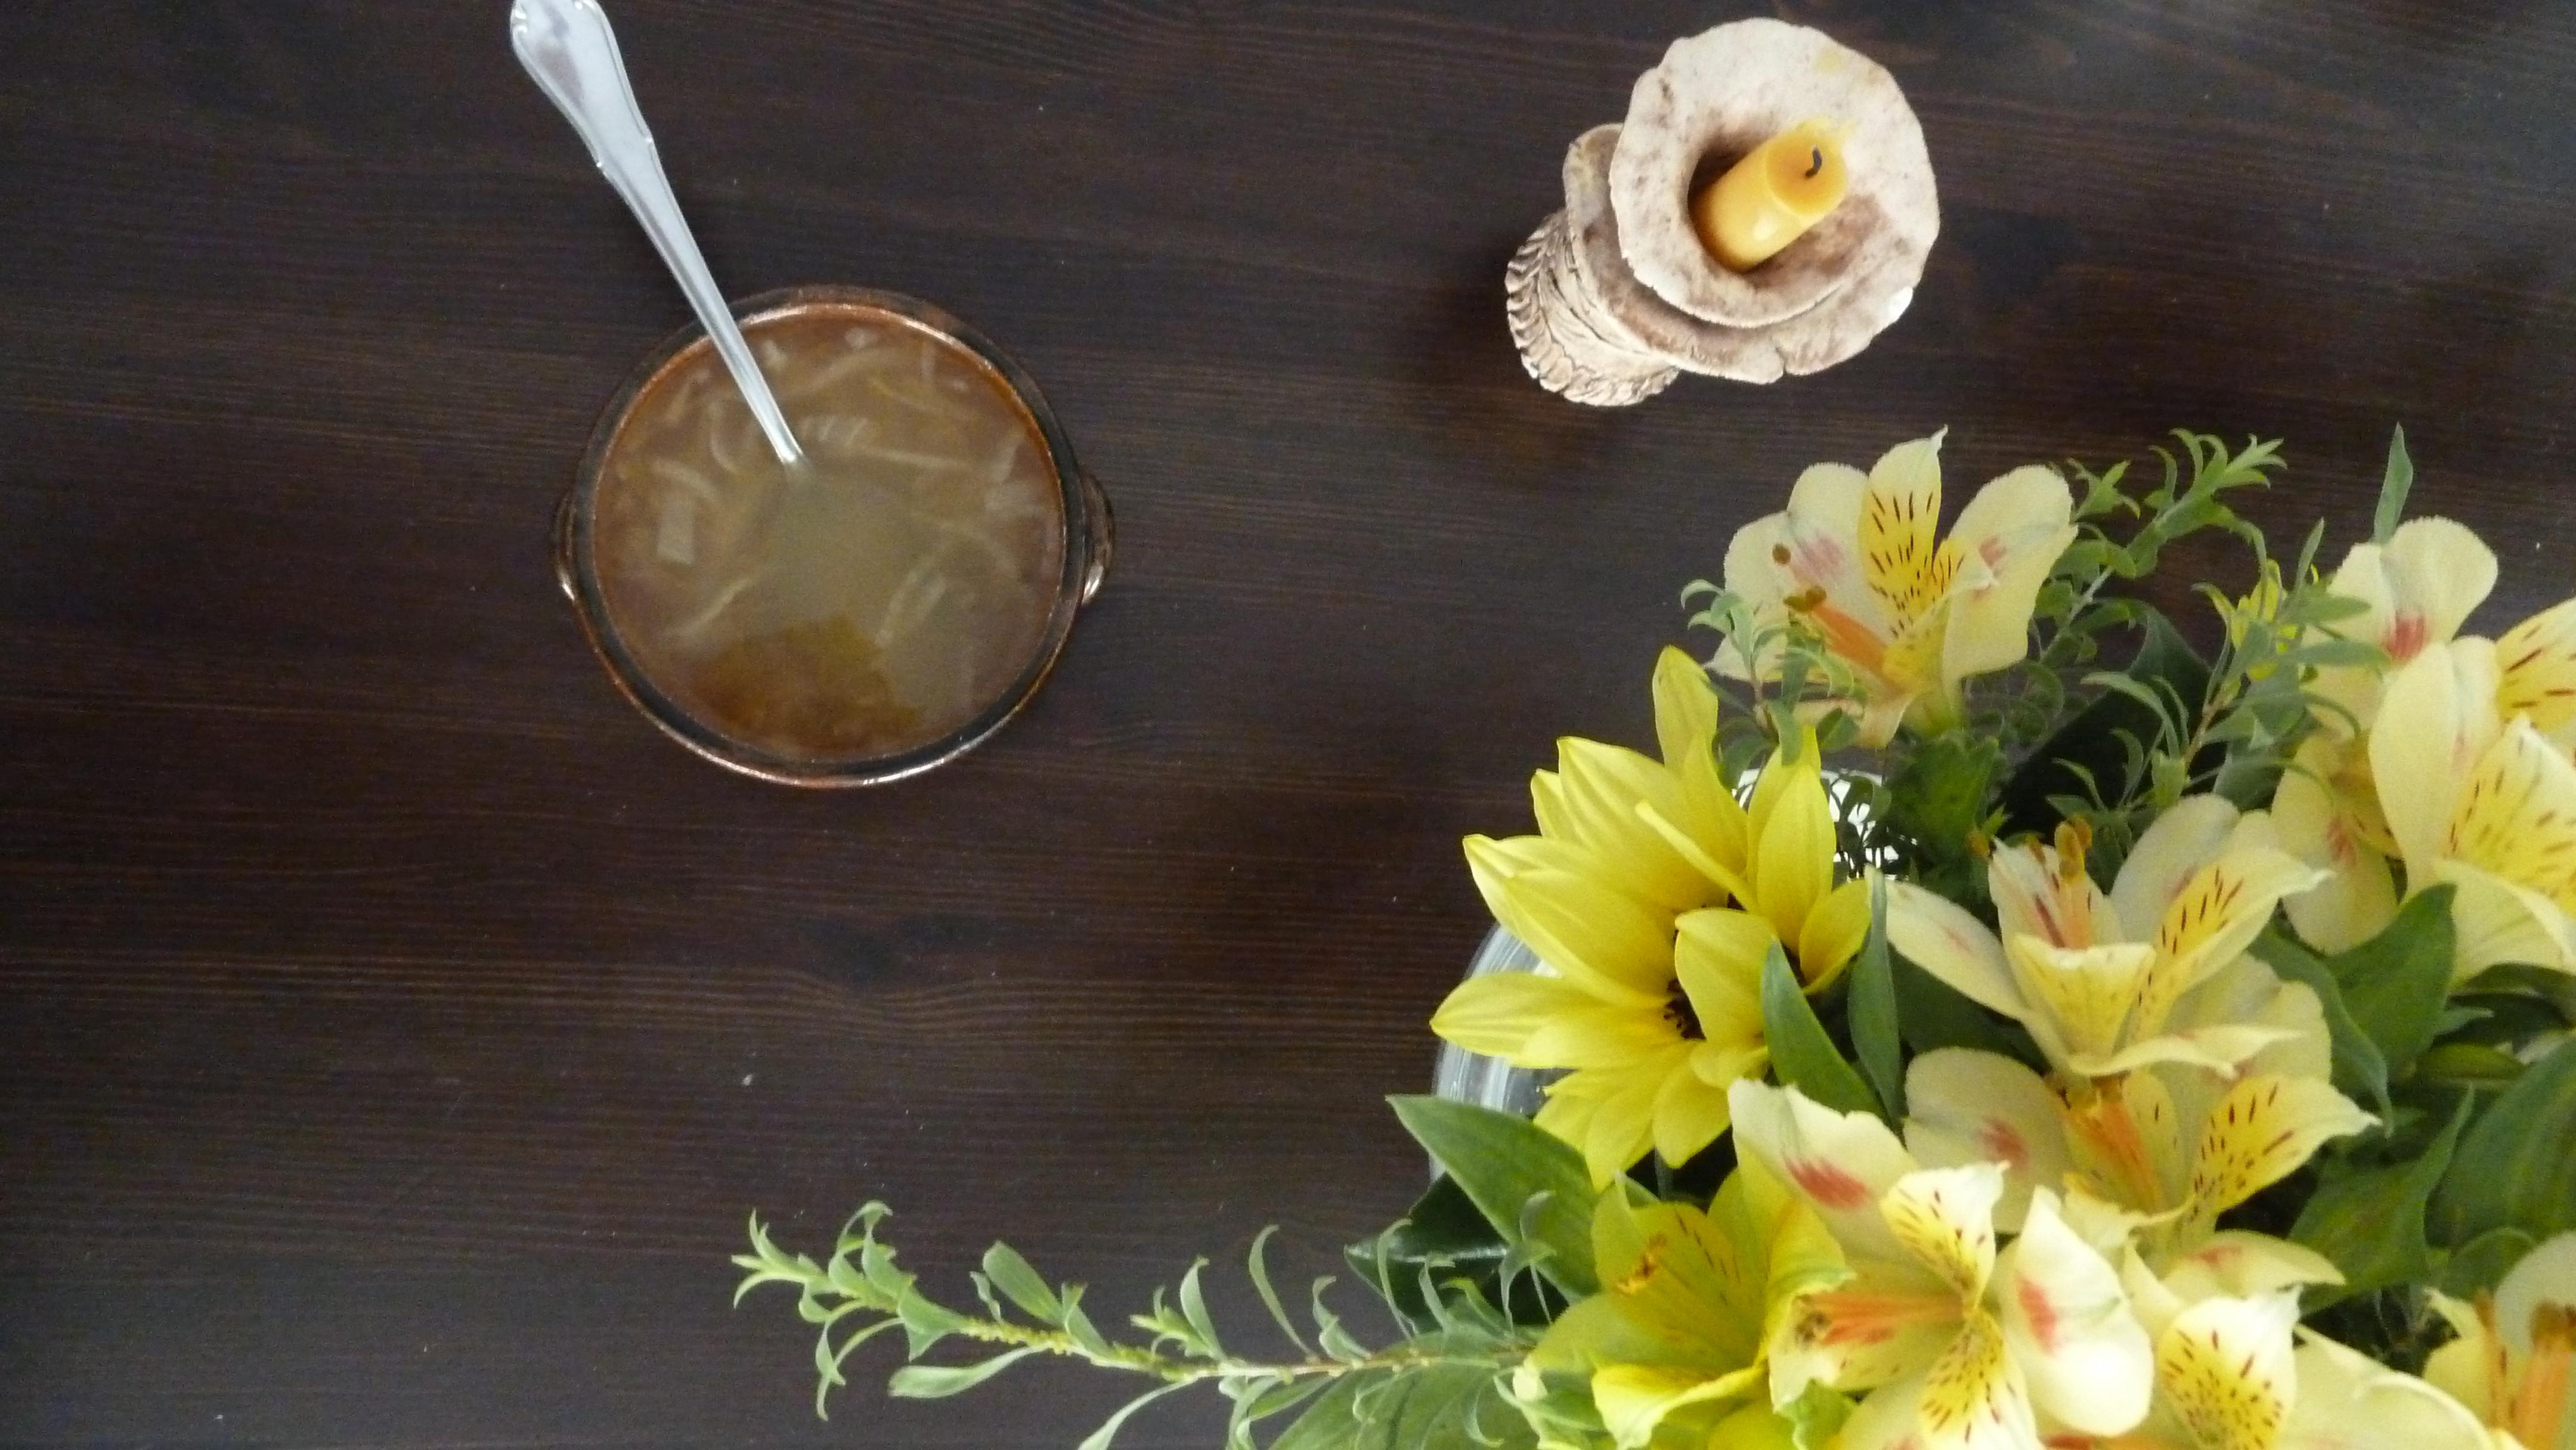  Leckere Zwiebelsuppe in in handgetöpferter Schale(Urgroßtante) und Kerzenhalter(ich als Kind) sowie #freshflower